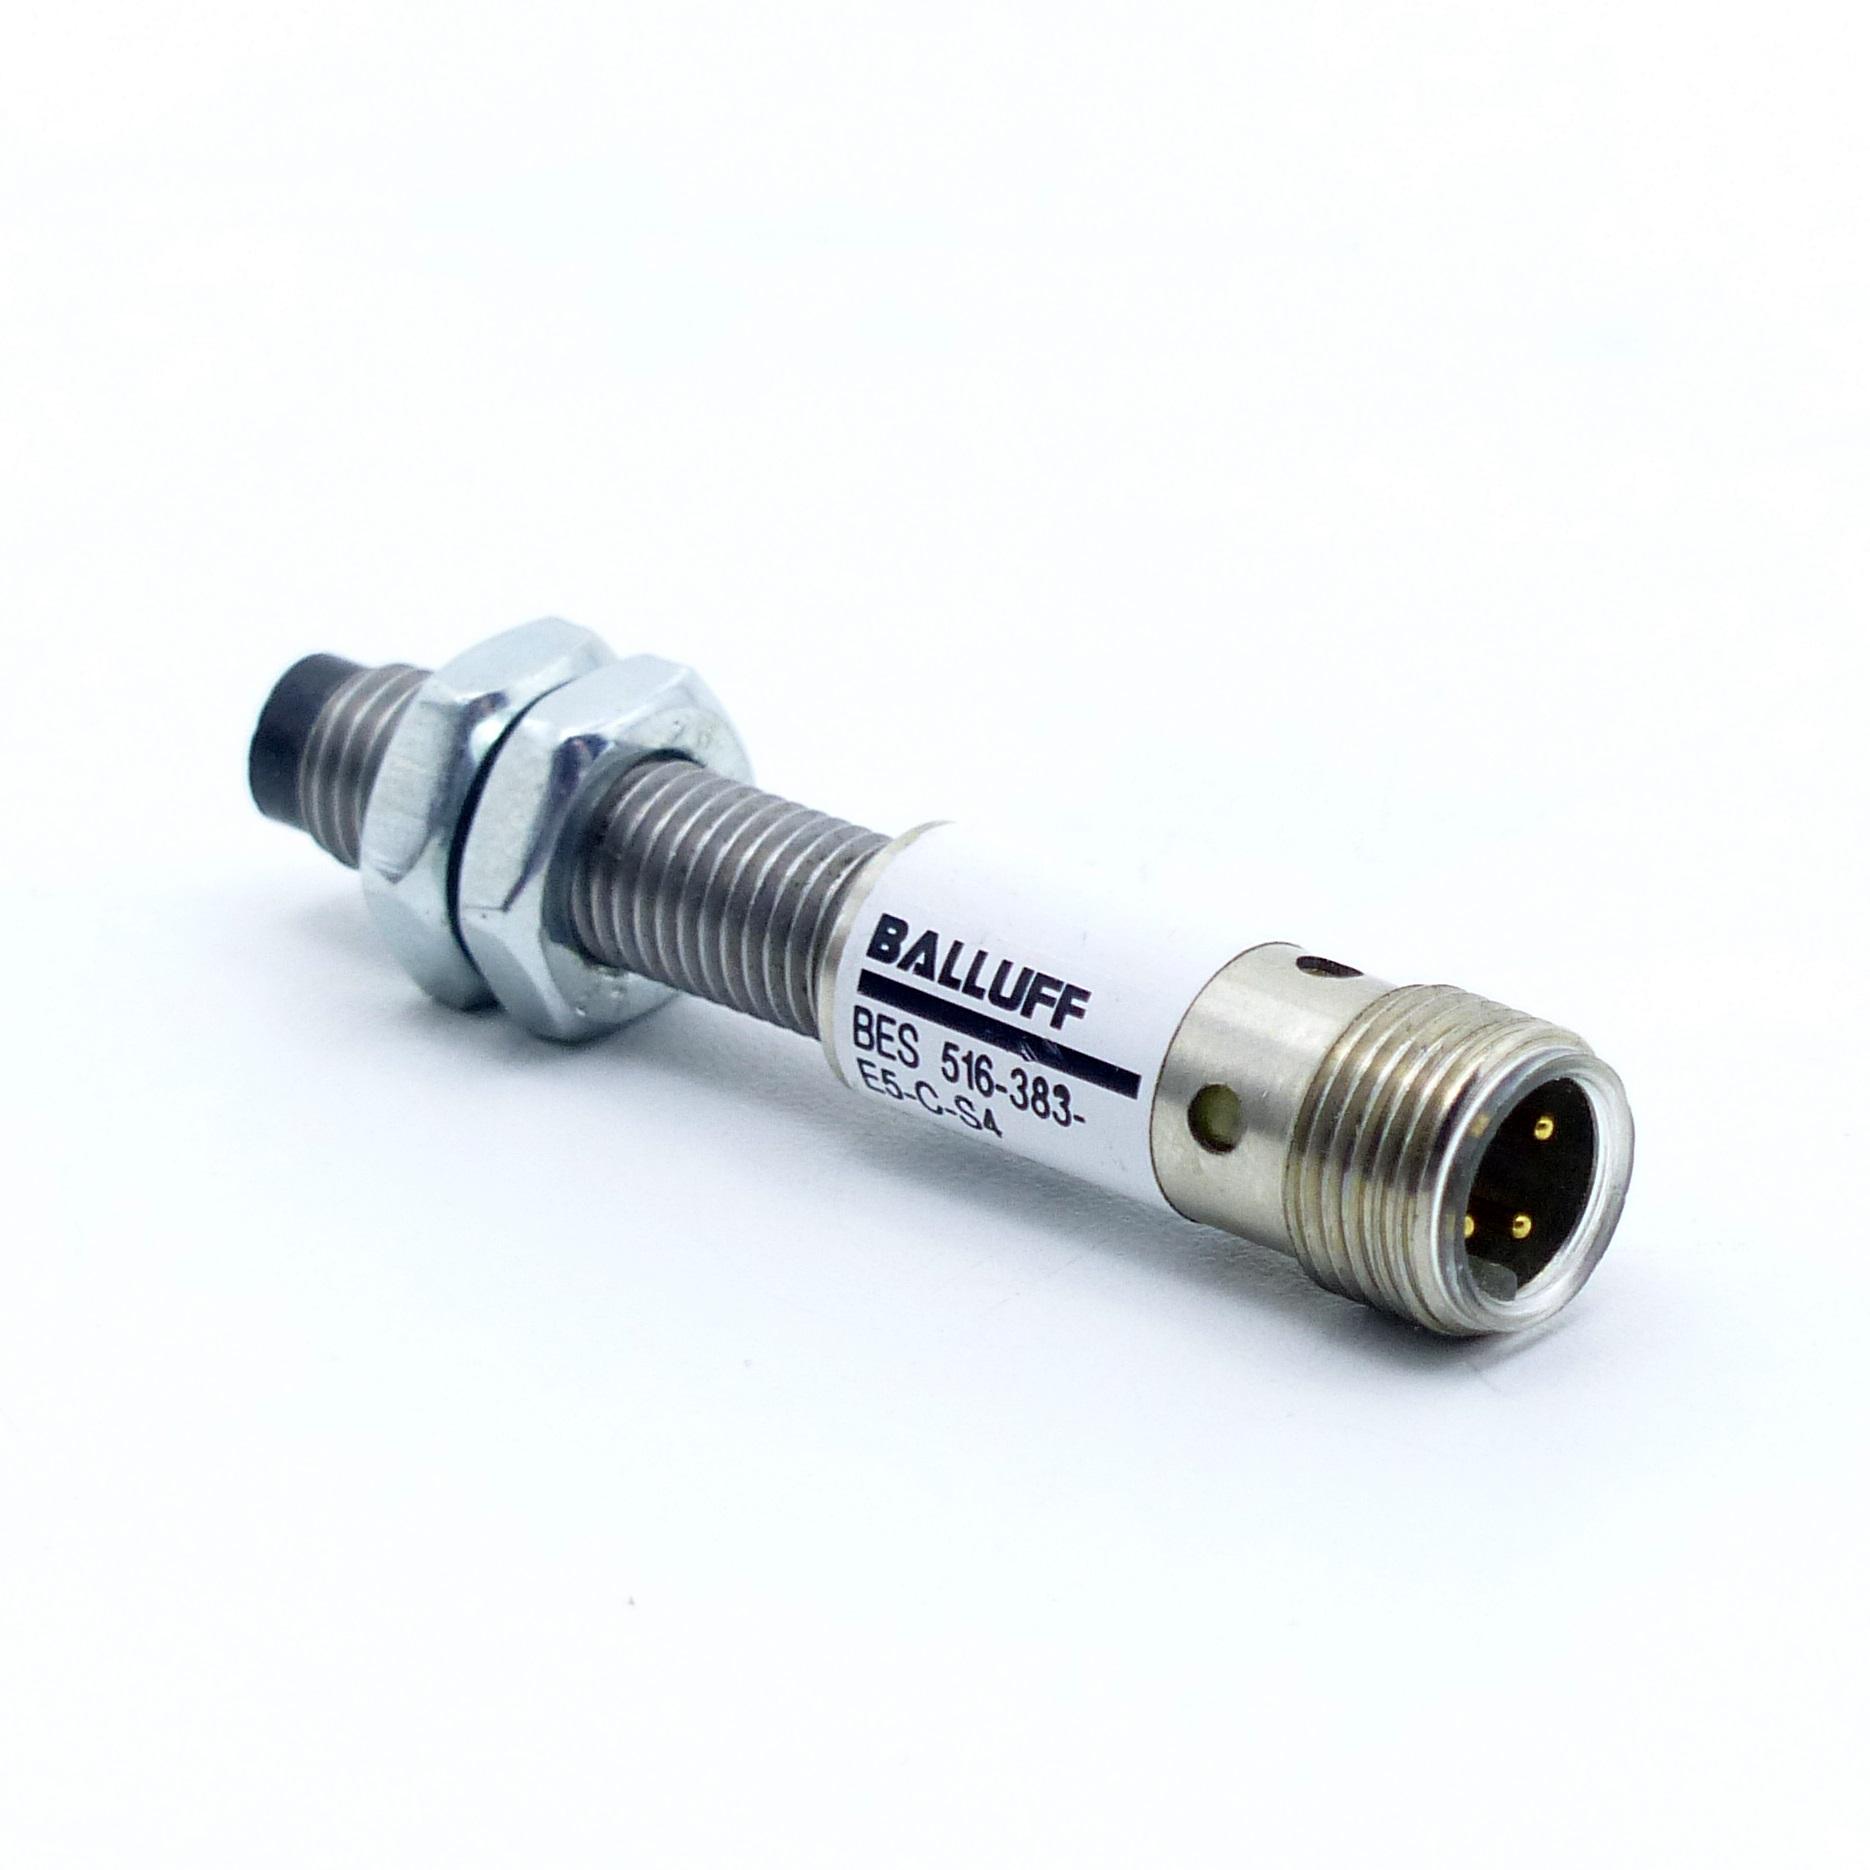 Produktfoto 1 von BALLUFF Sensor Induktiv BES 516-383-E5-C-S4